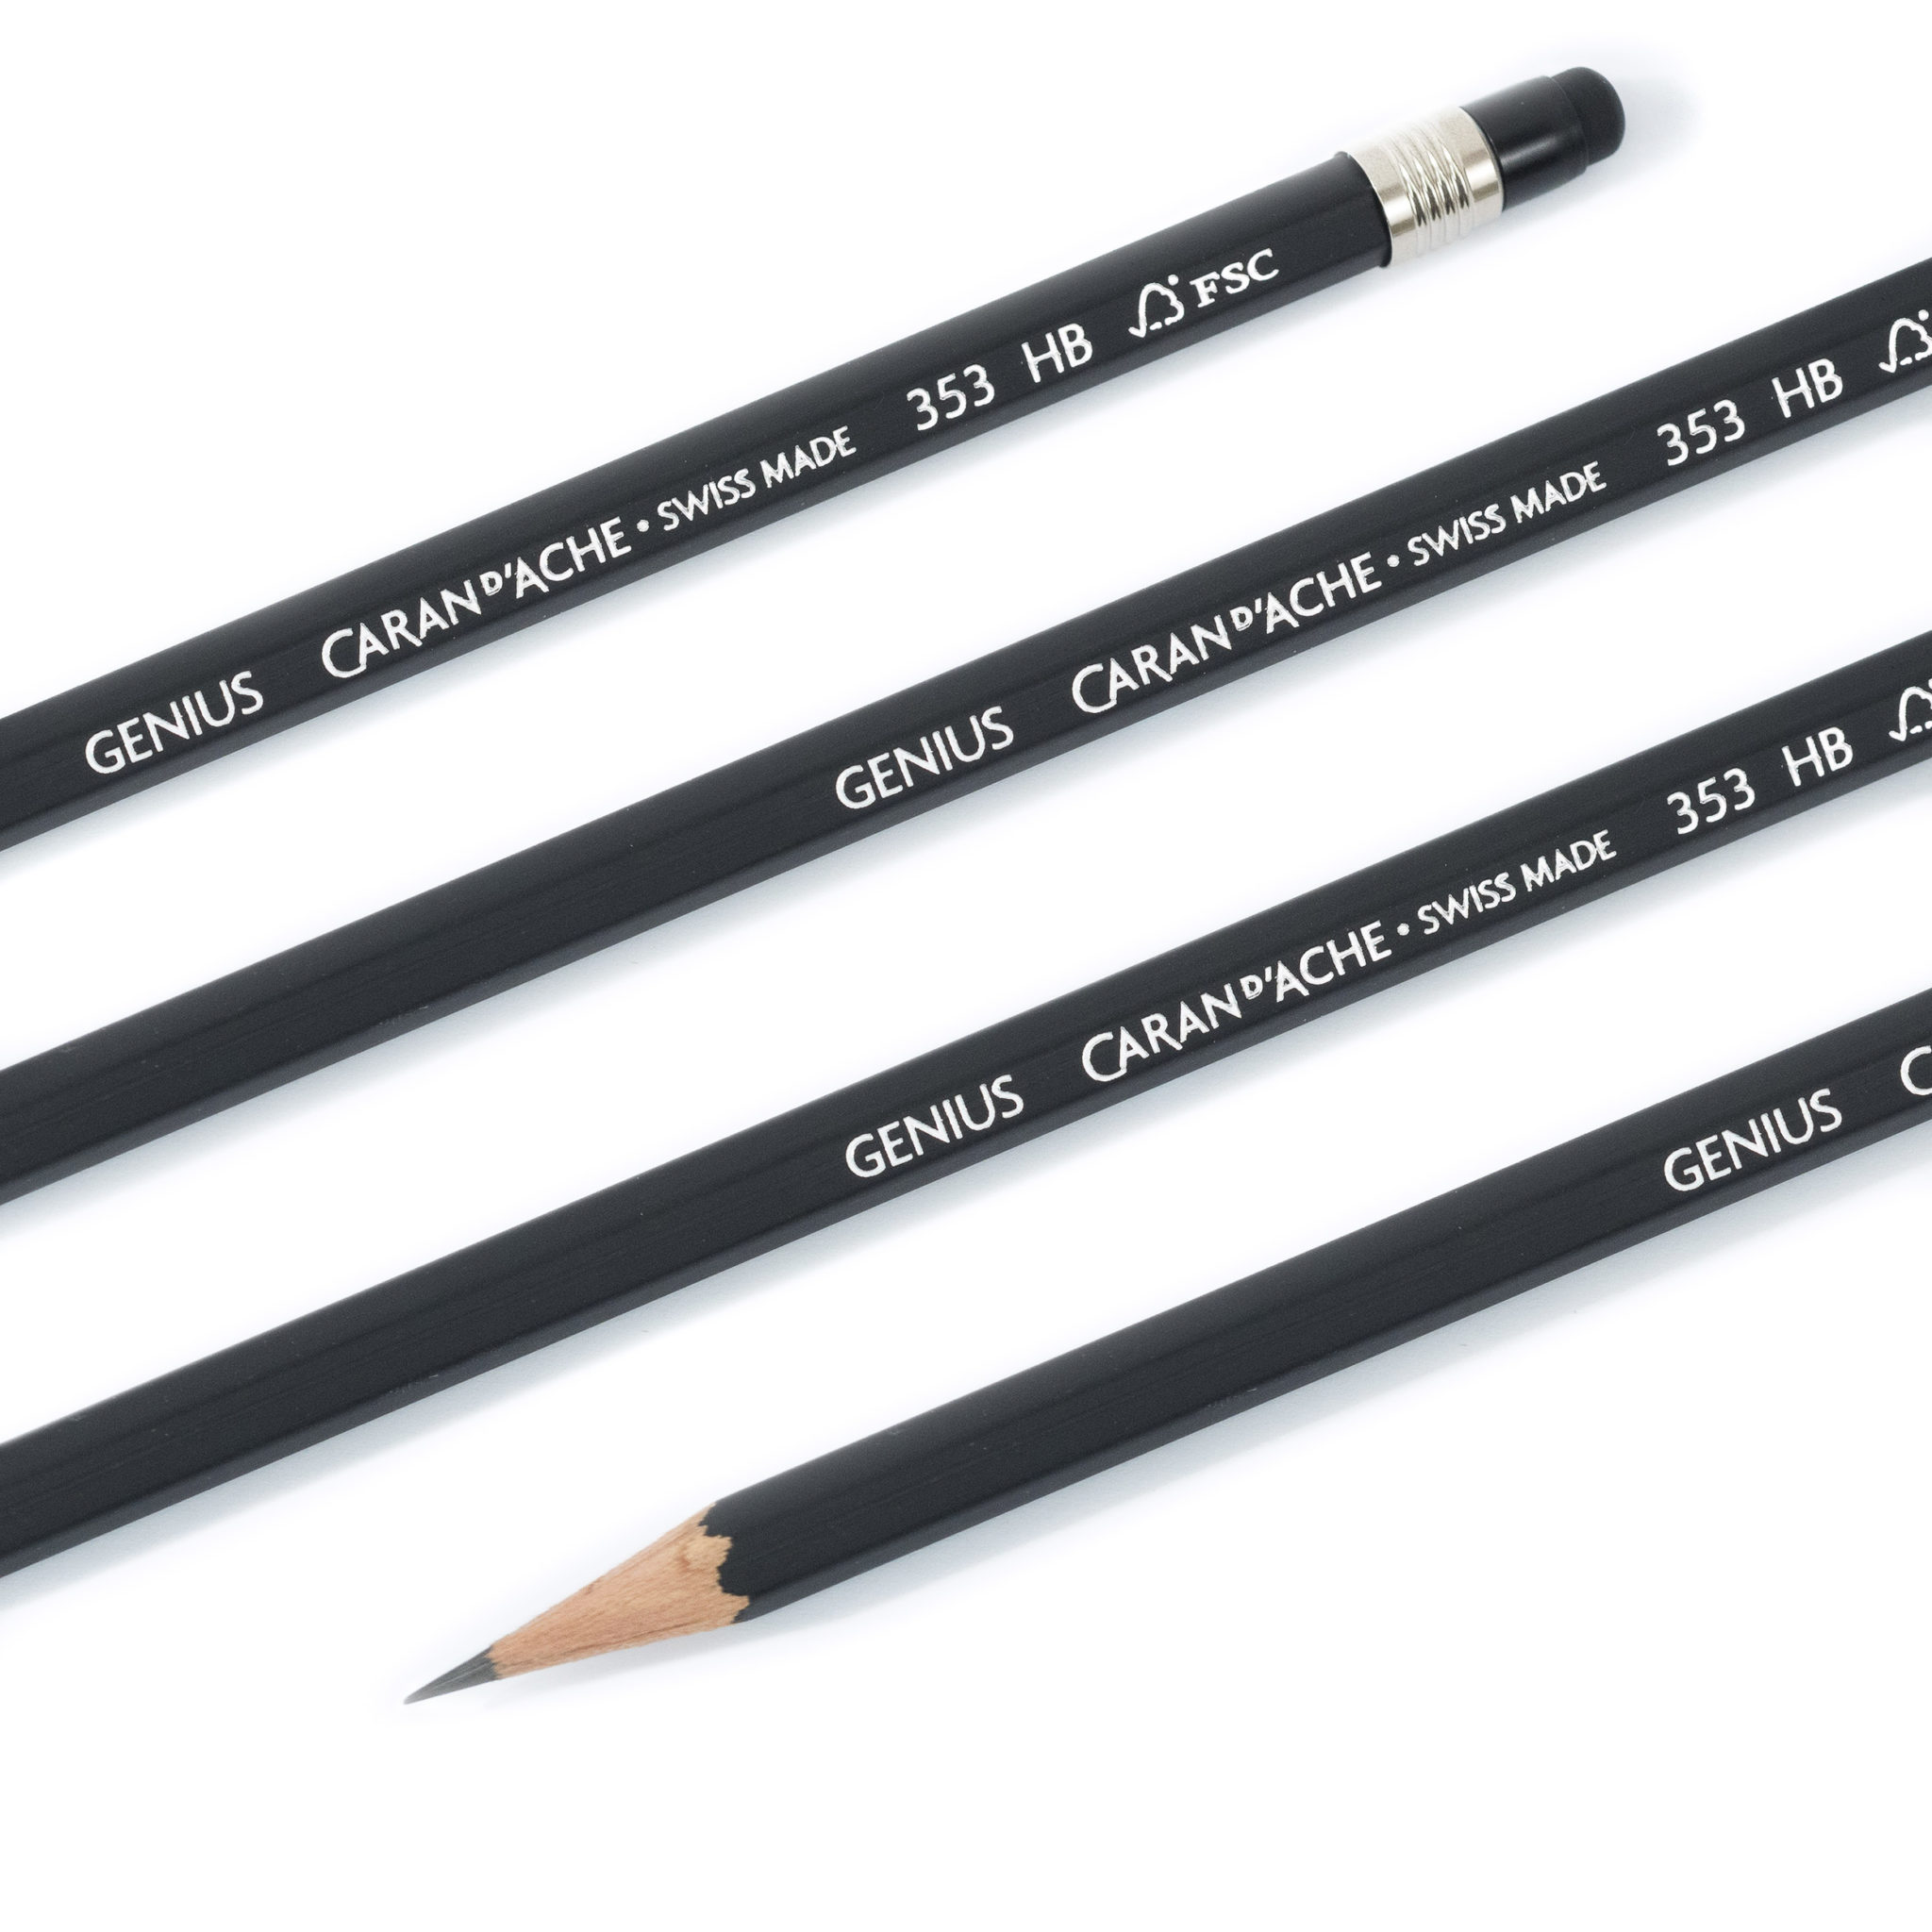 Caran d'Ache Genius Pencils